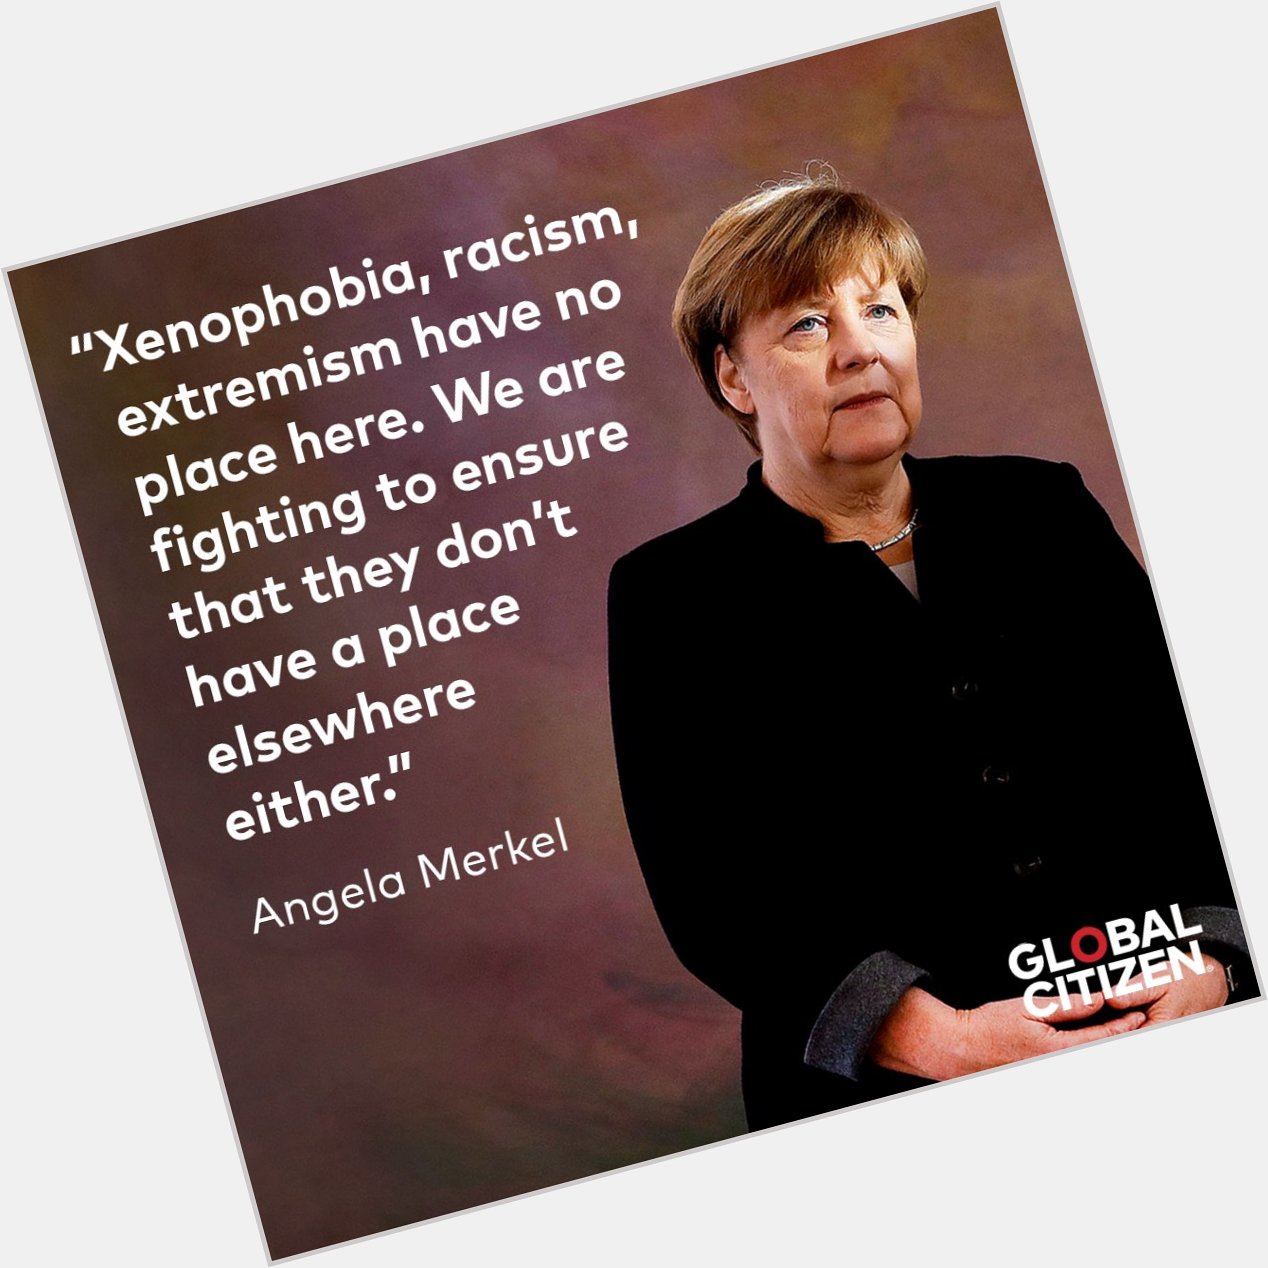 Spoken like a true Global Citizen! Happy birthday, Angela Merkel 